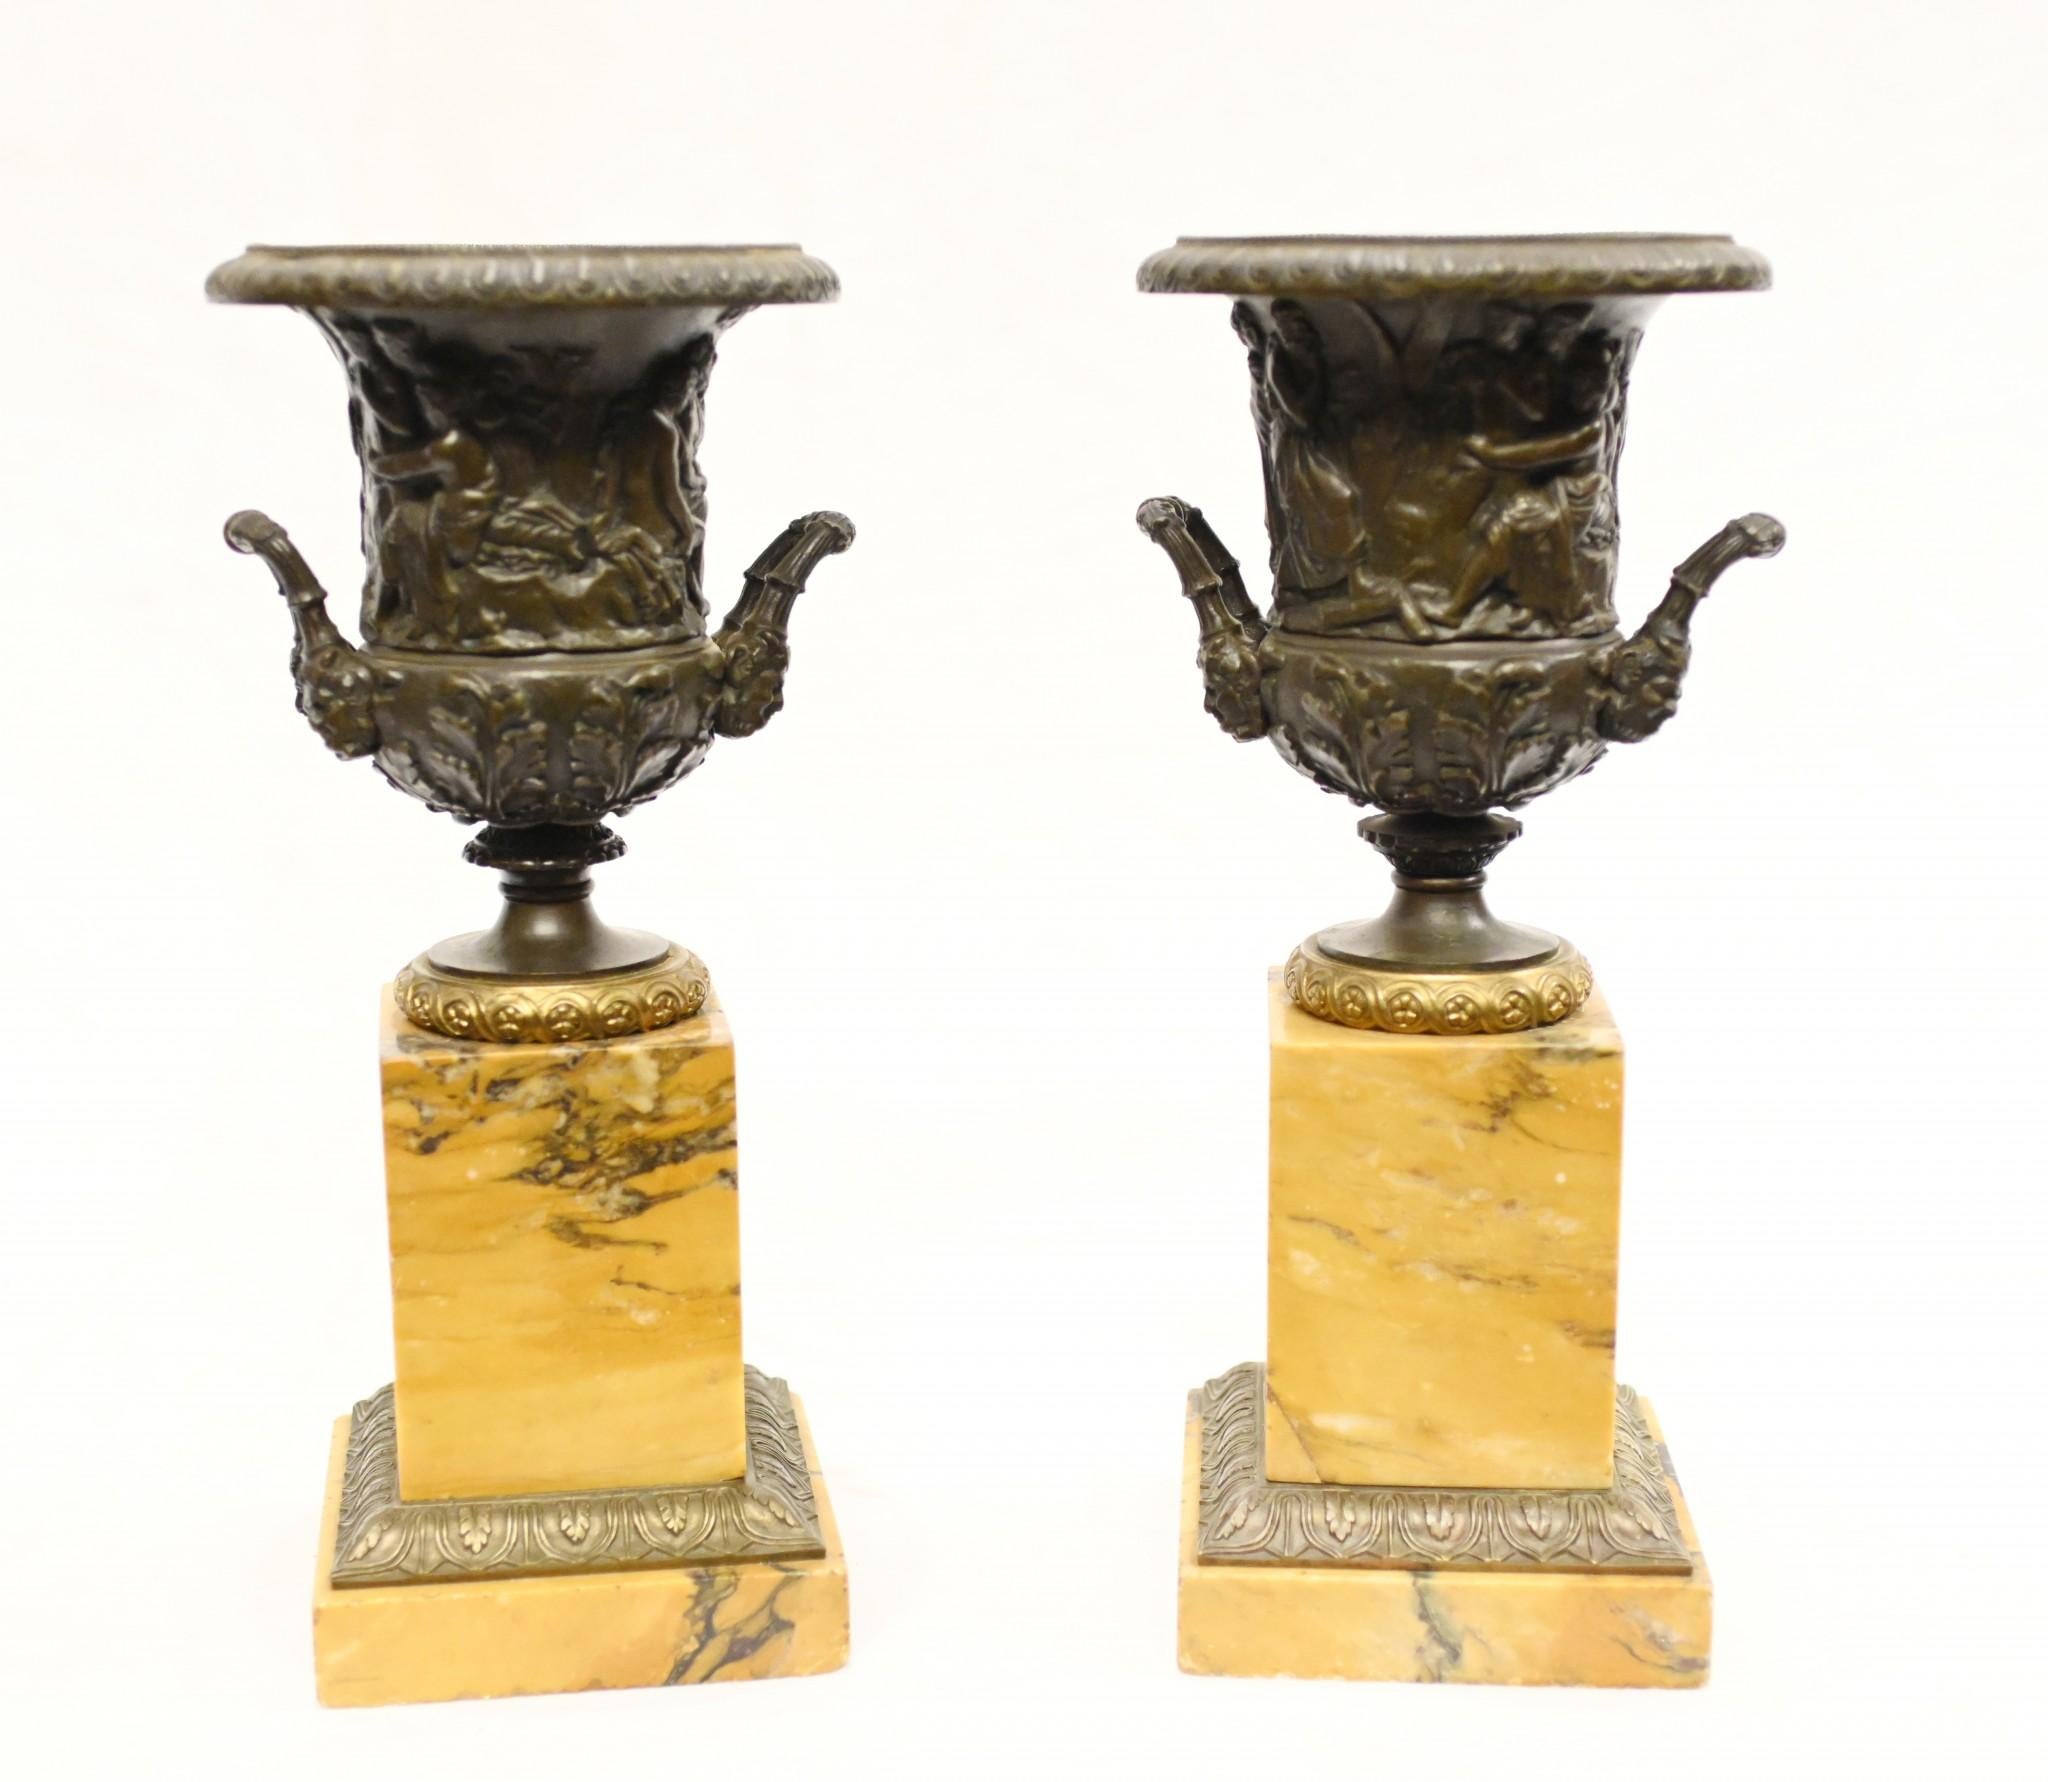 Prächtiges Paar vergoldeter und bronzener Grand-Tour-Urnen auf Marmorsockel steht
CIRCA 1820 auf diesen italienischen Antiquitäten
Die Urnen - in Form einer Campana - stehen auf Sockeln aus Siena-Marmor, die mit vergoldeten
Ich liebe die lachsrosa